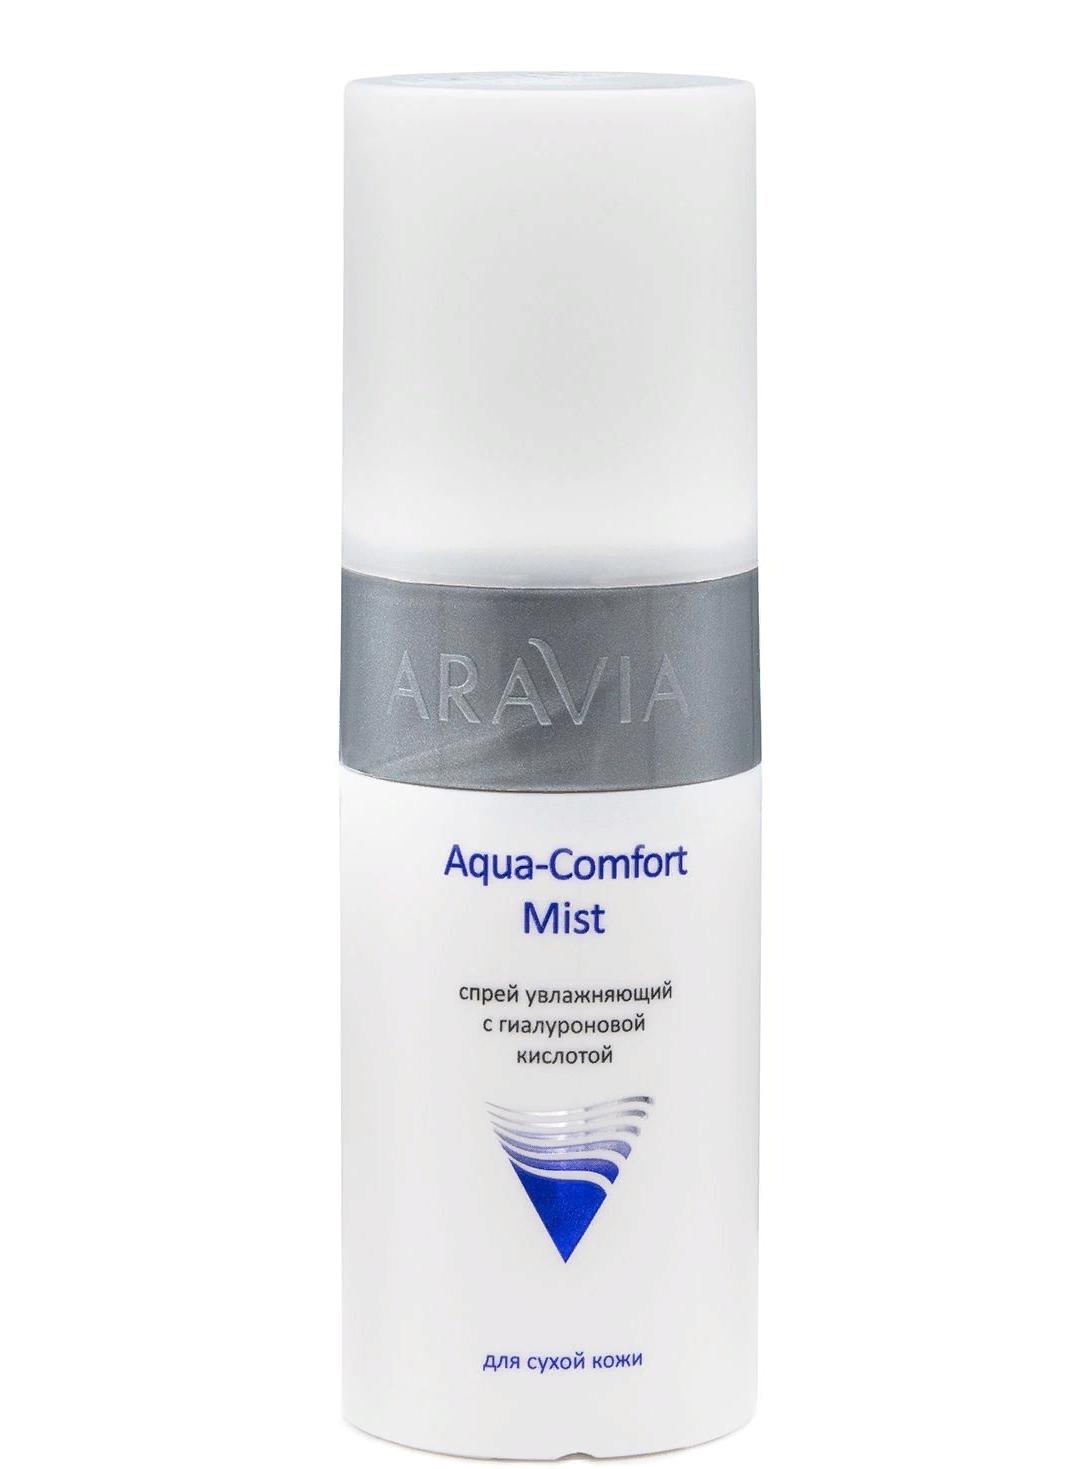 Aravia Professional Aqua Comfort Mist Спрей увлажняющий с гиалуроновой кислотой, 150мл